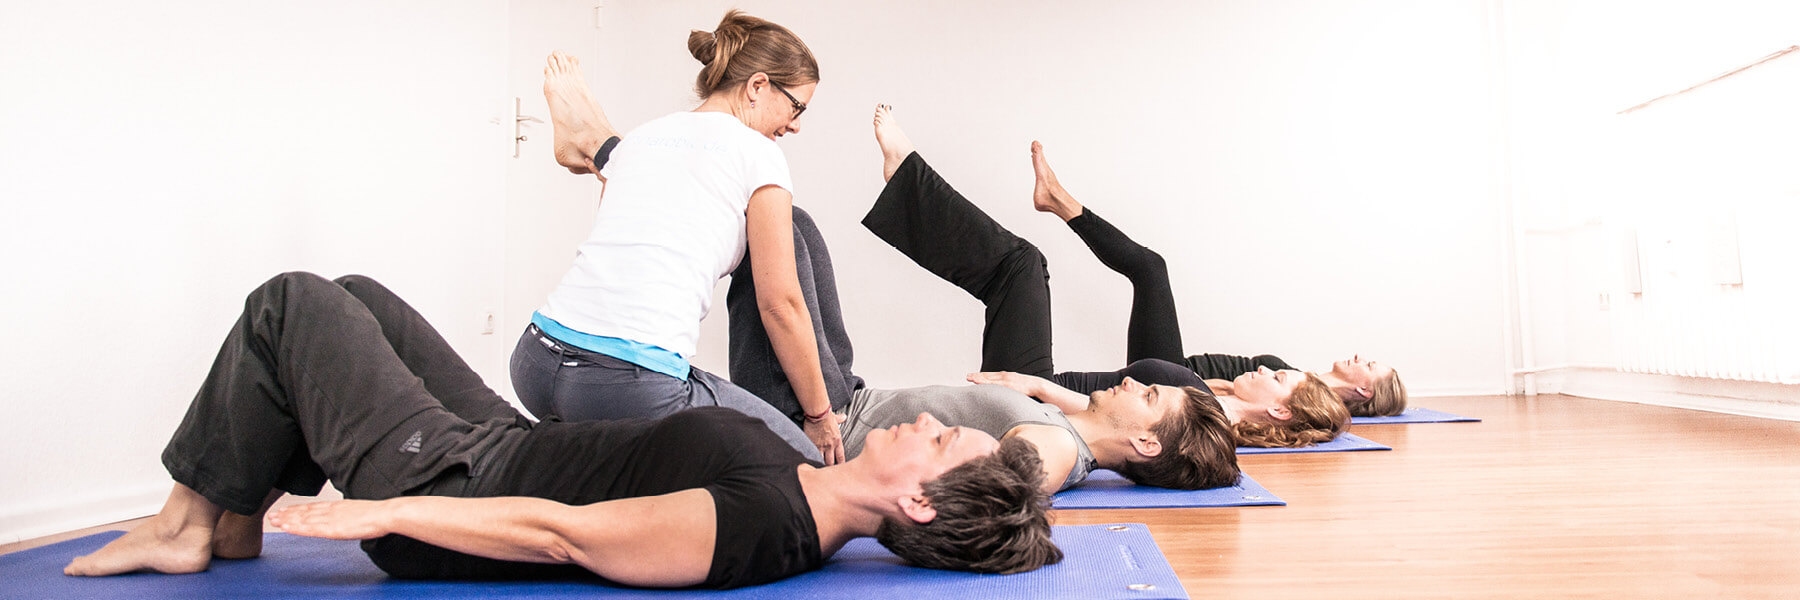 Pilates-Grundposition (nach APPI), dient der Stärkung der tiefen Bauch- und Rückenmuskeln, body and mind technique